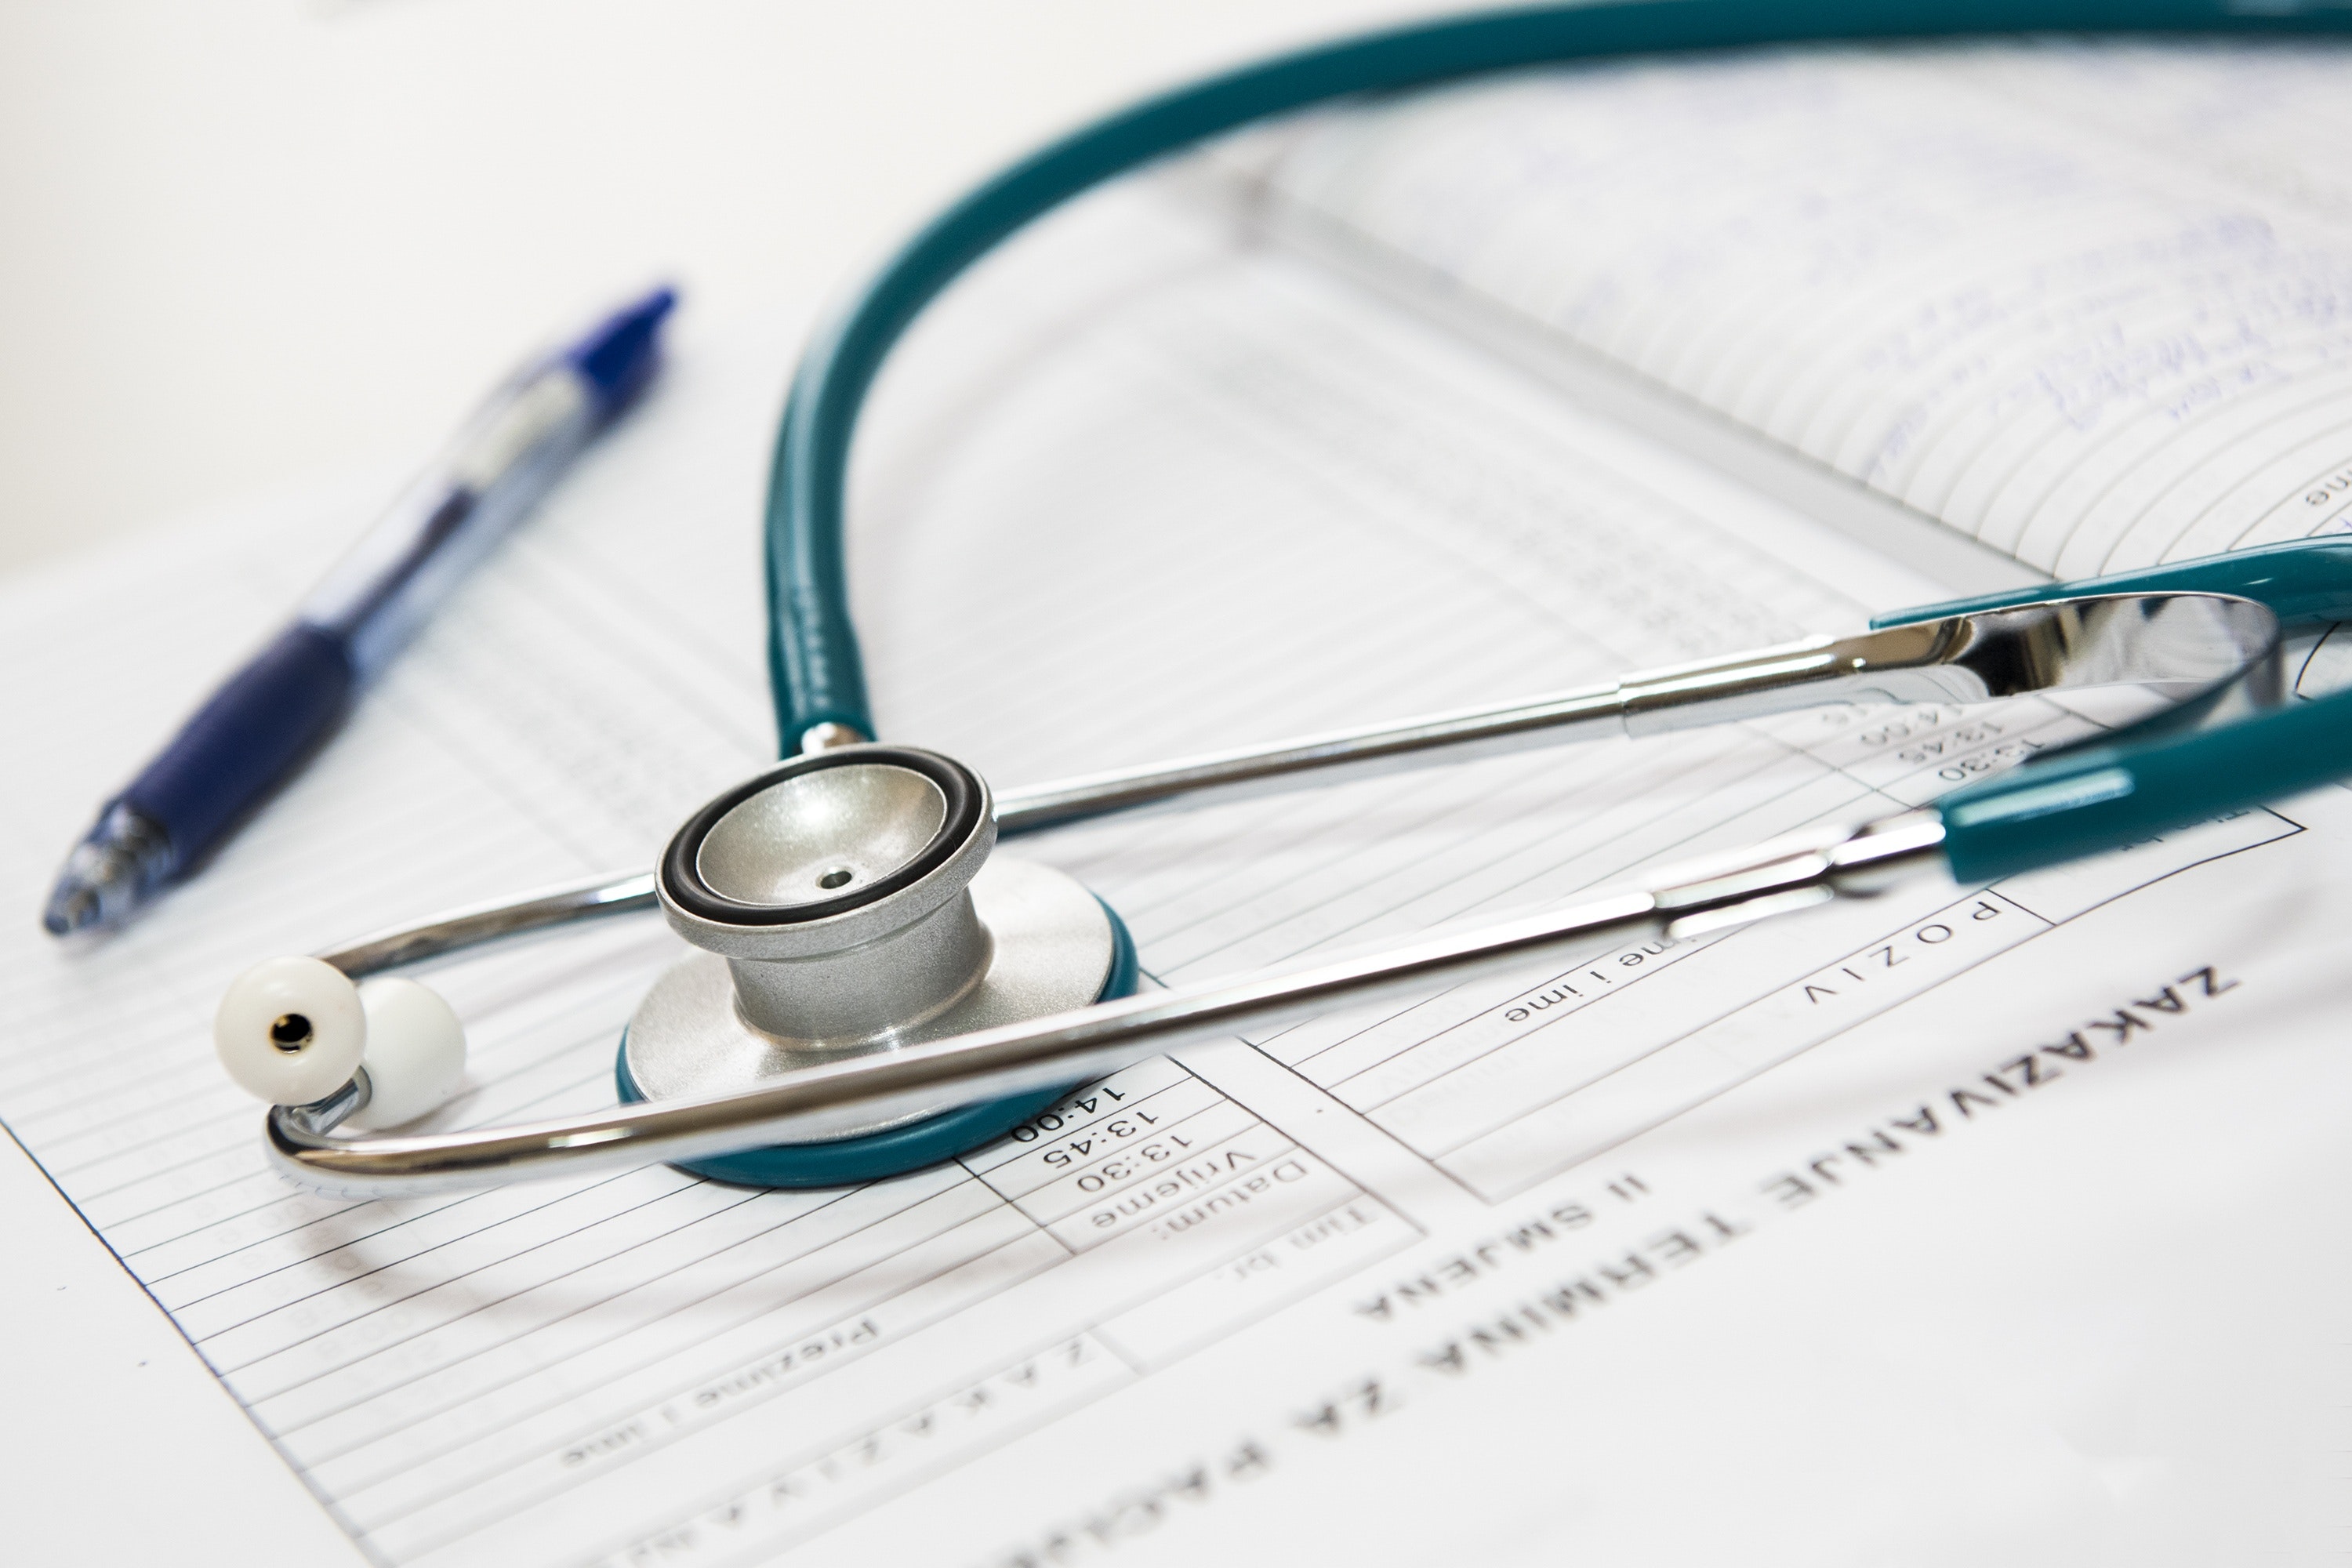 Doctolib et Maincare annoncent leur partenariat au service des hôpitaux et de la prise en charge de leurs patients